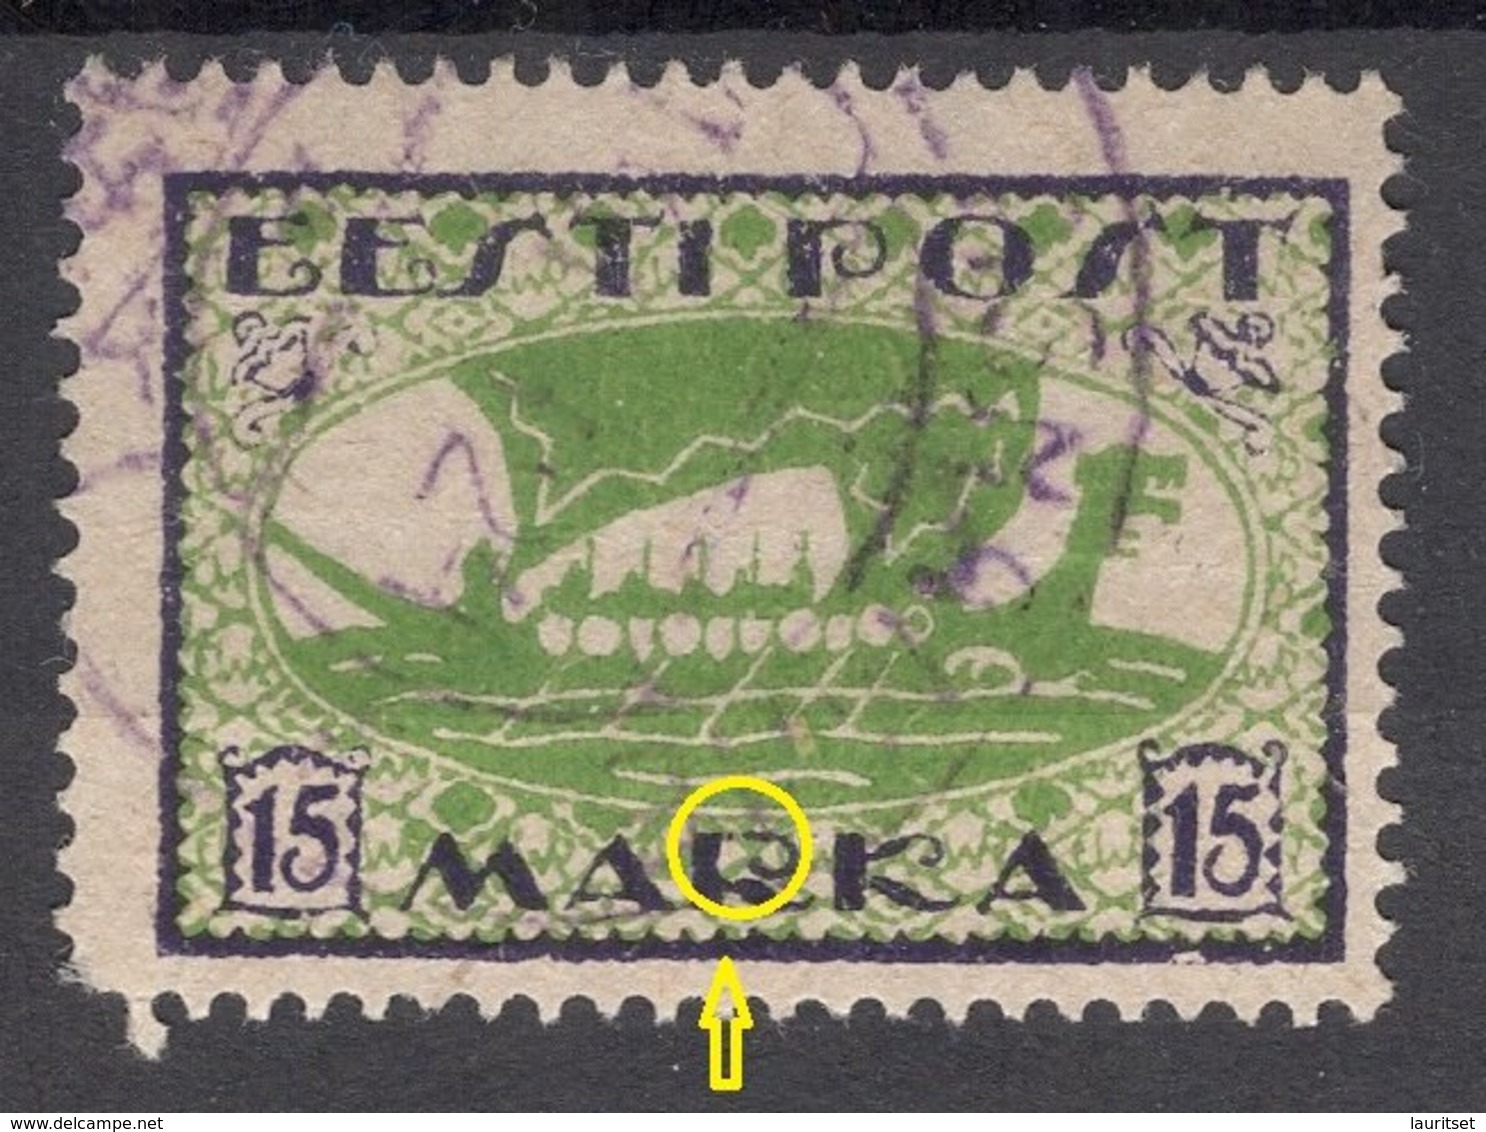 ESTLAND Estonia 1922 Michel 23 A ERROR Abart Variety Damaged "R" In Marka O Violet Cancel - Estland